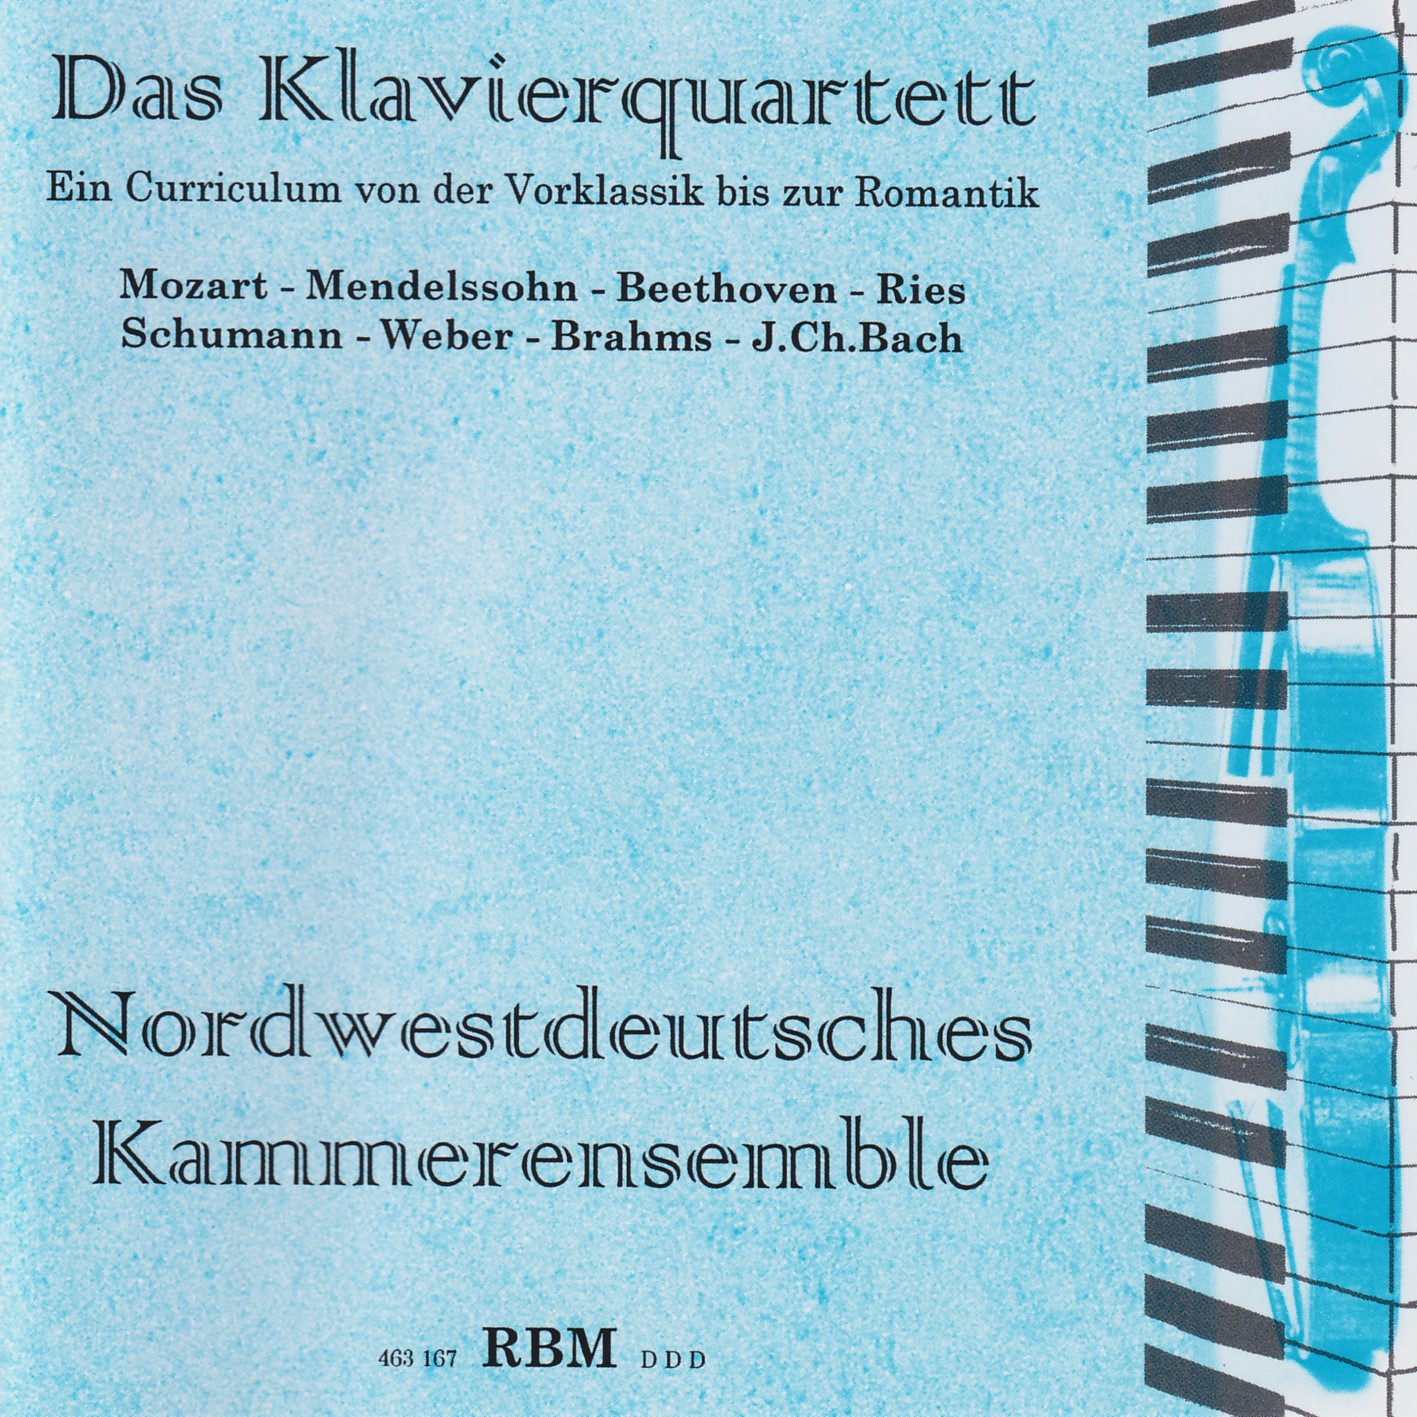 Das Klavierquartett - Nordwestdeutsches Kammerensemble